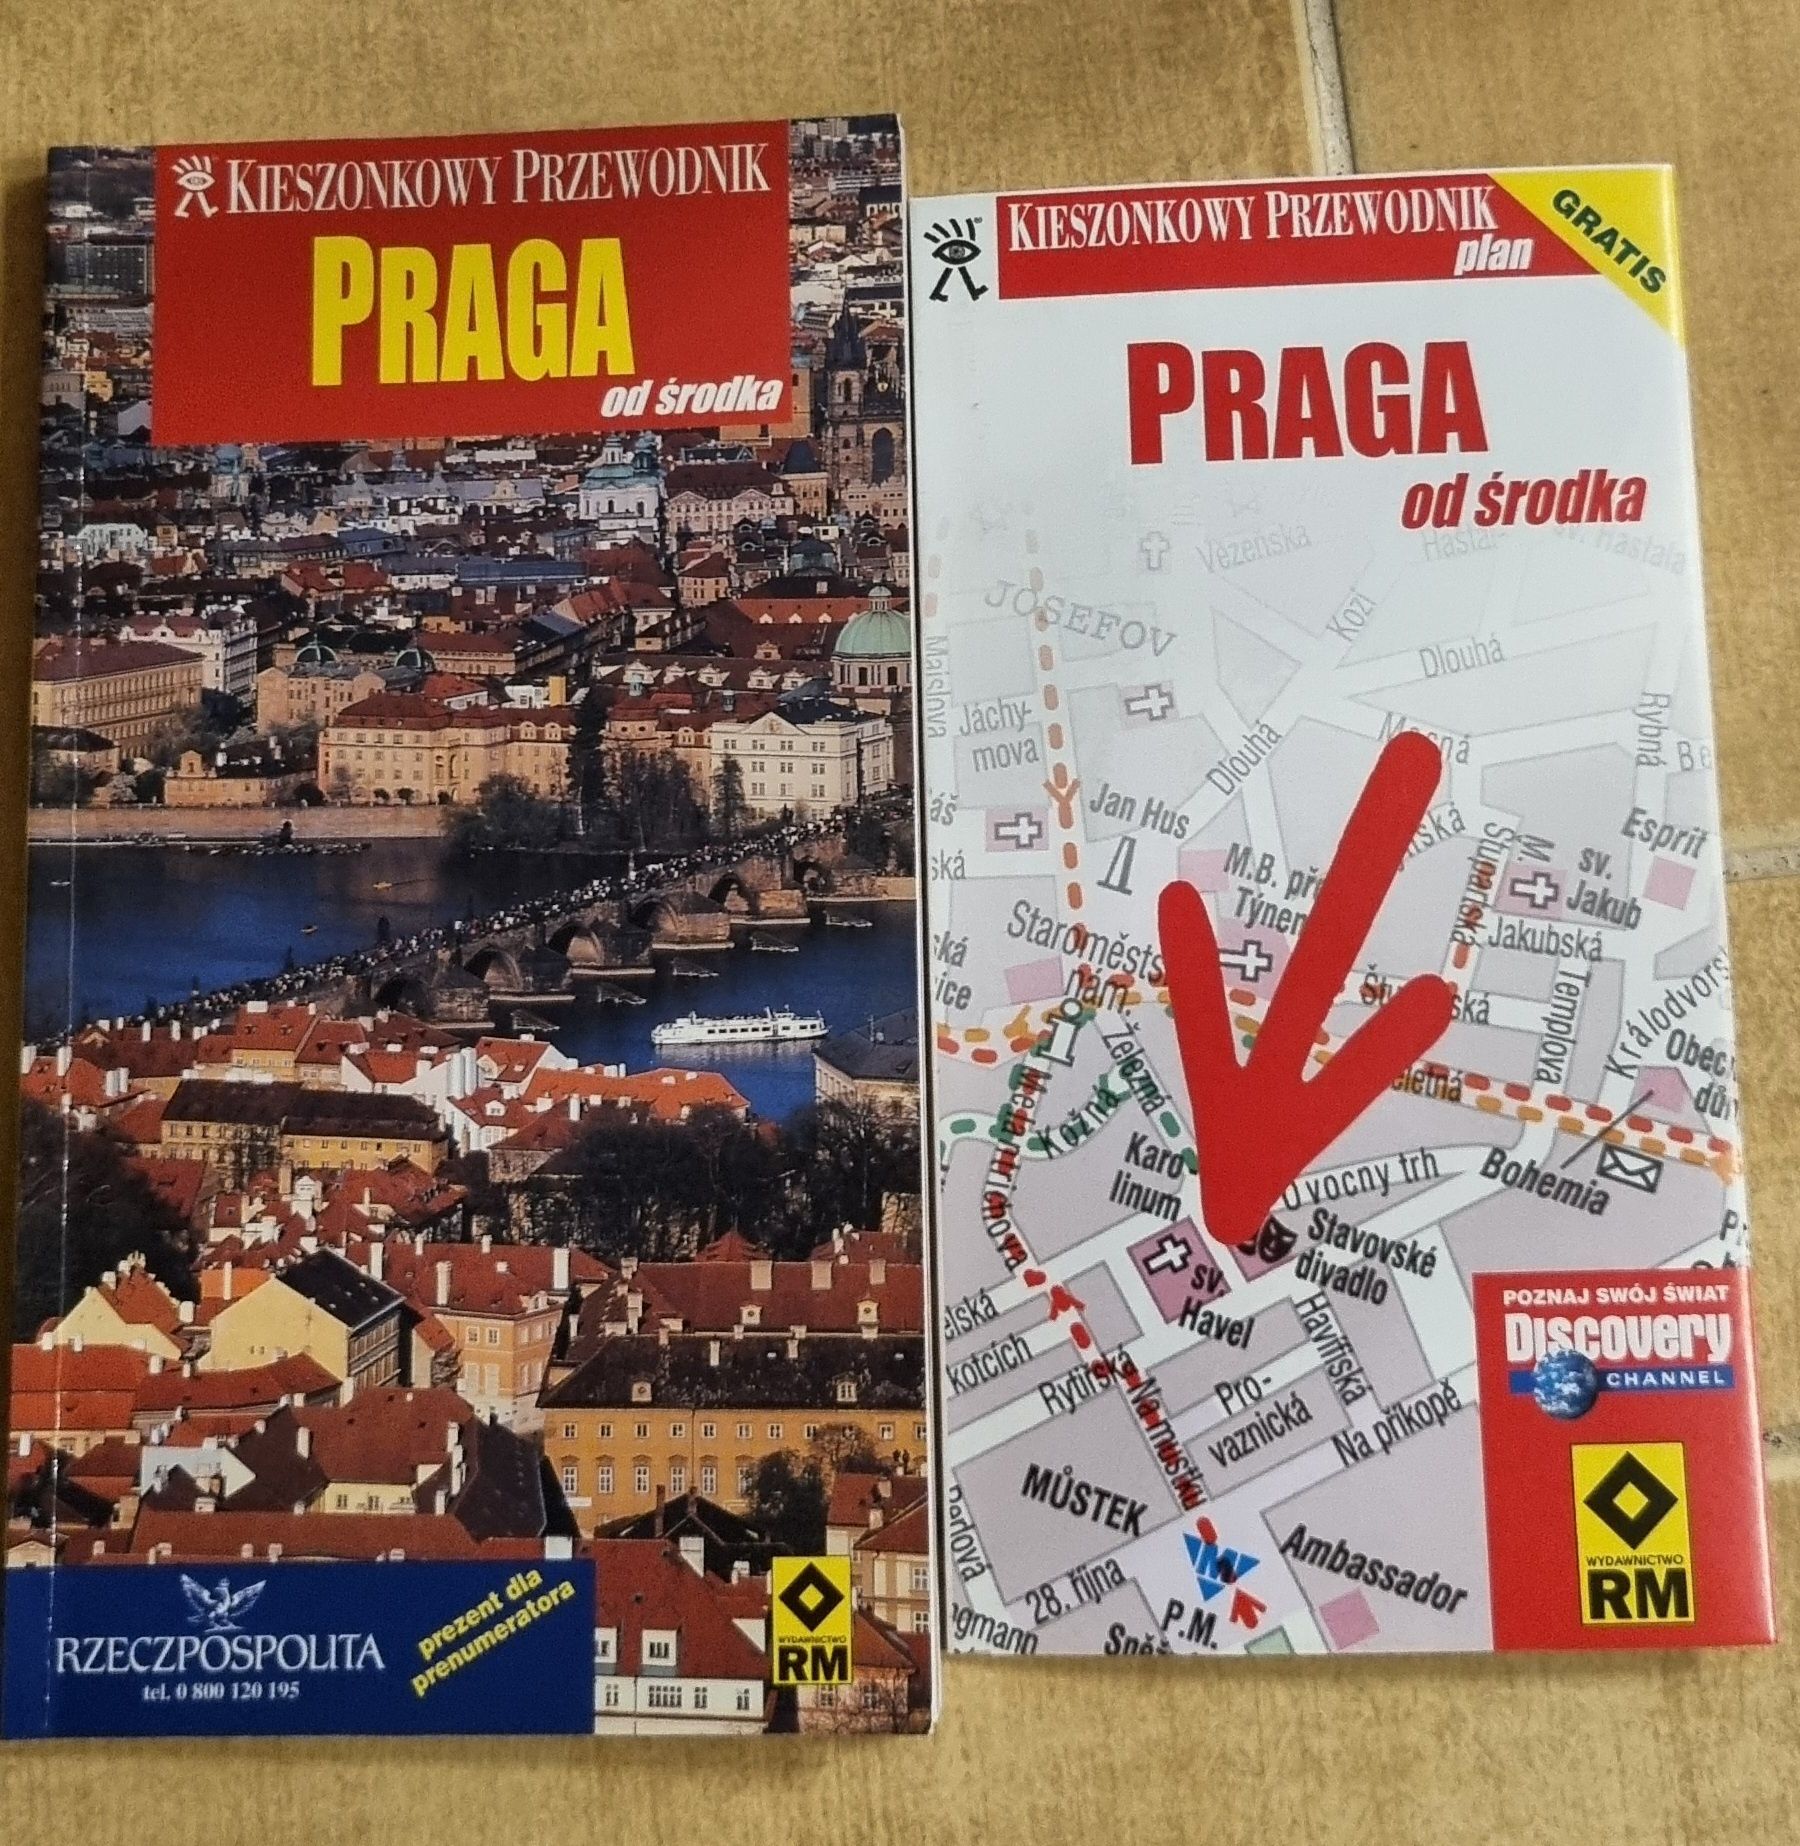 Praga od środka przewodnik kieszonkowy + plan miasta